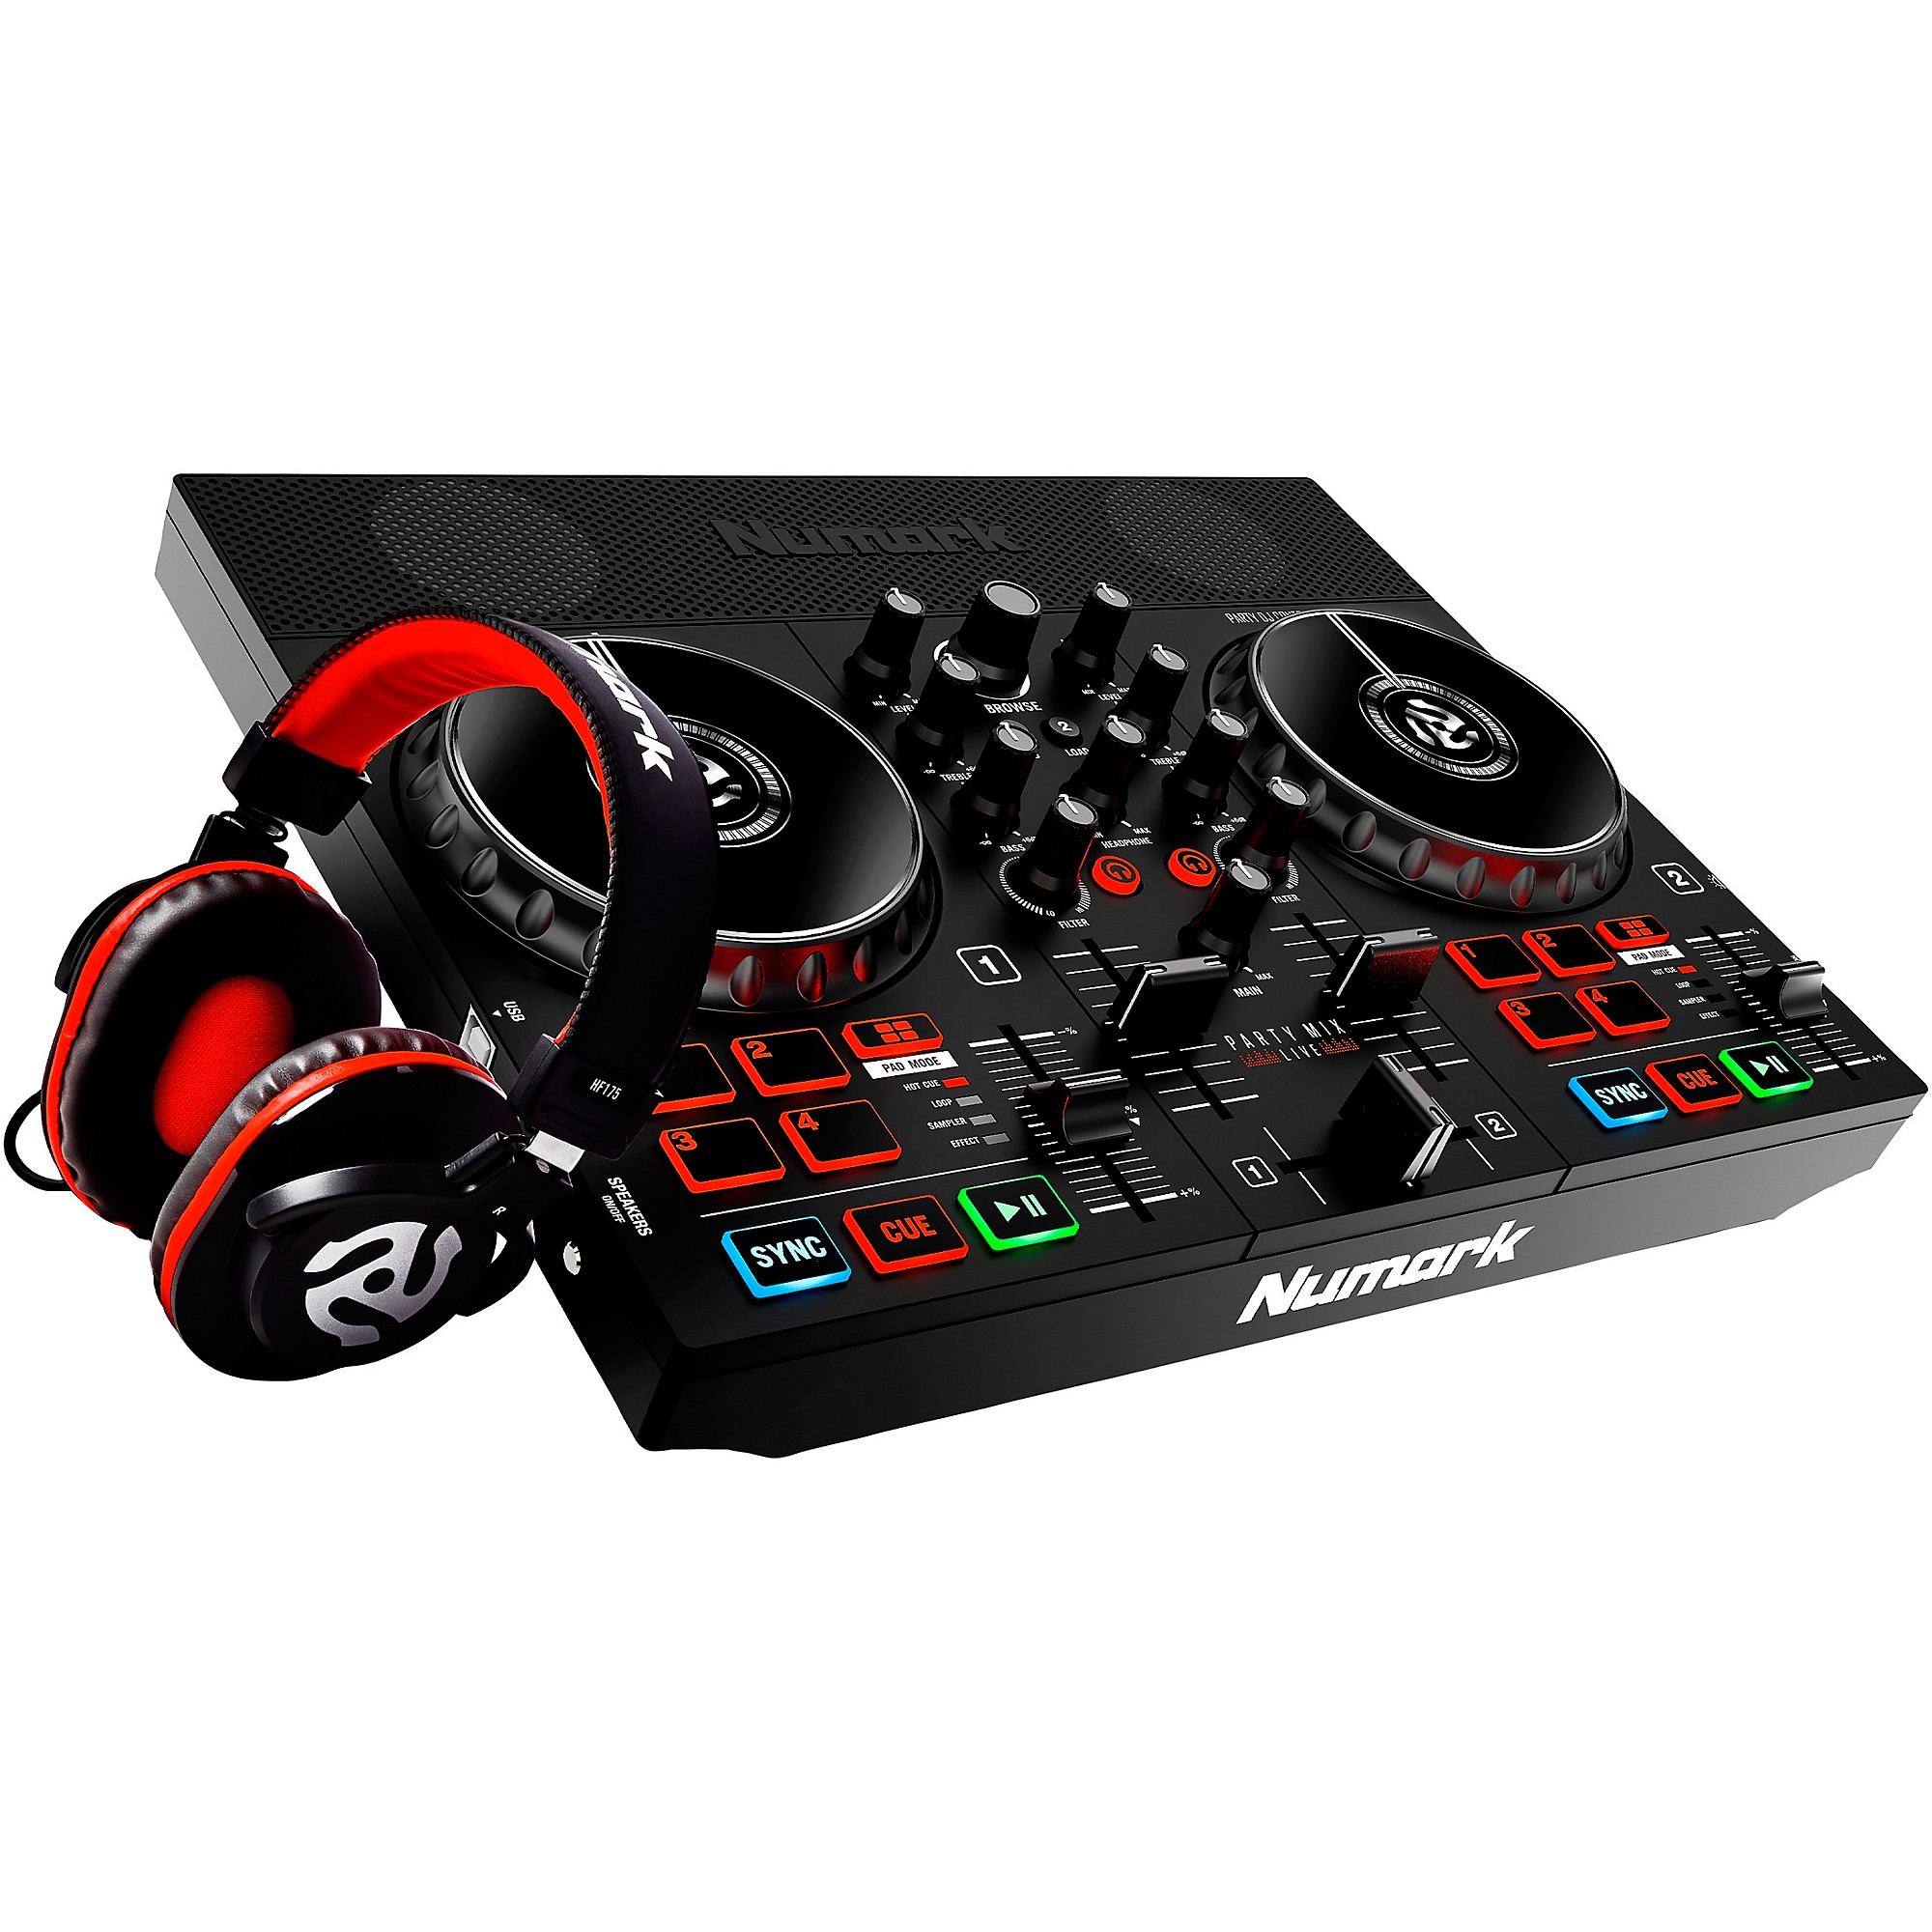 Numark Party Mix Live DJ Controller Bundle With Professional 